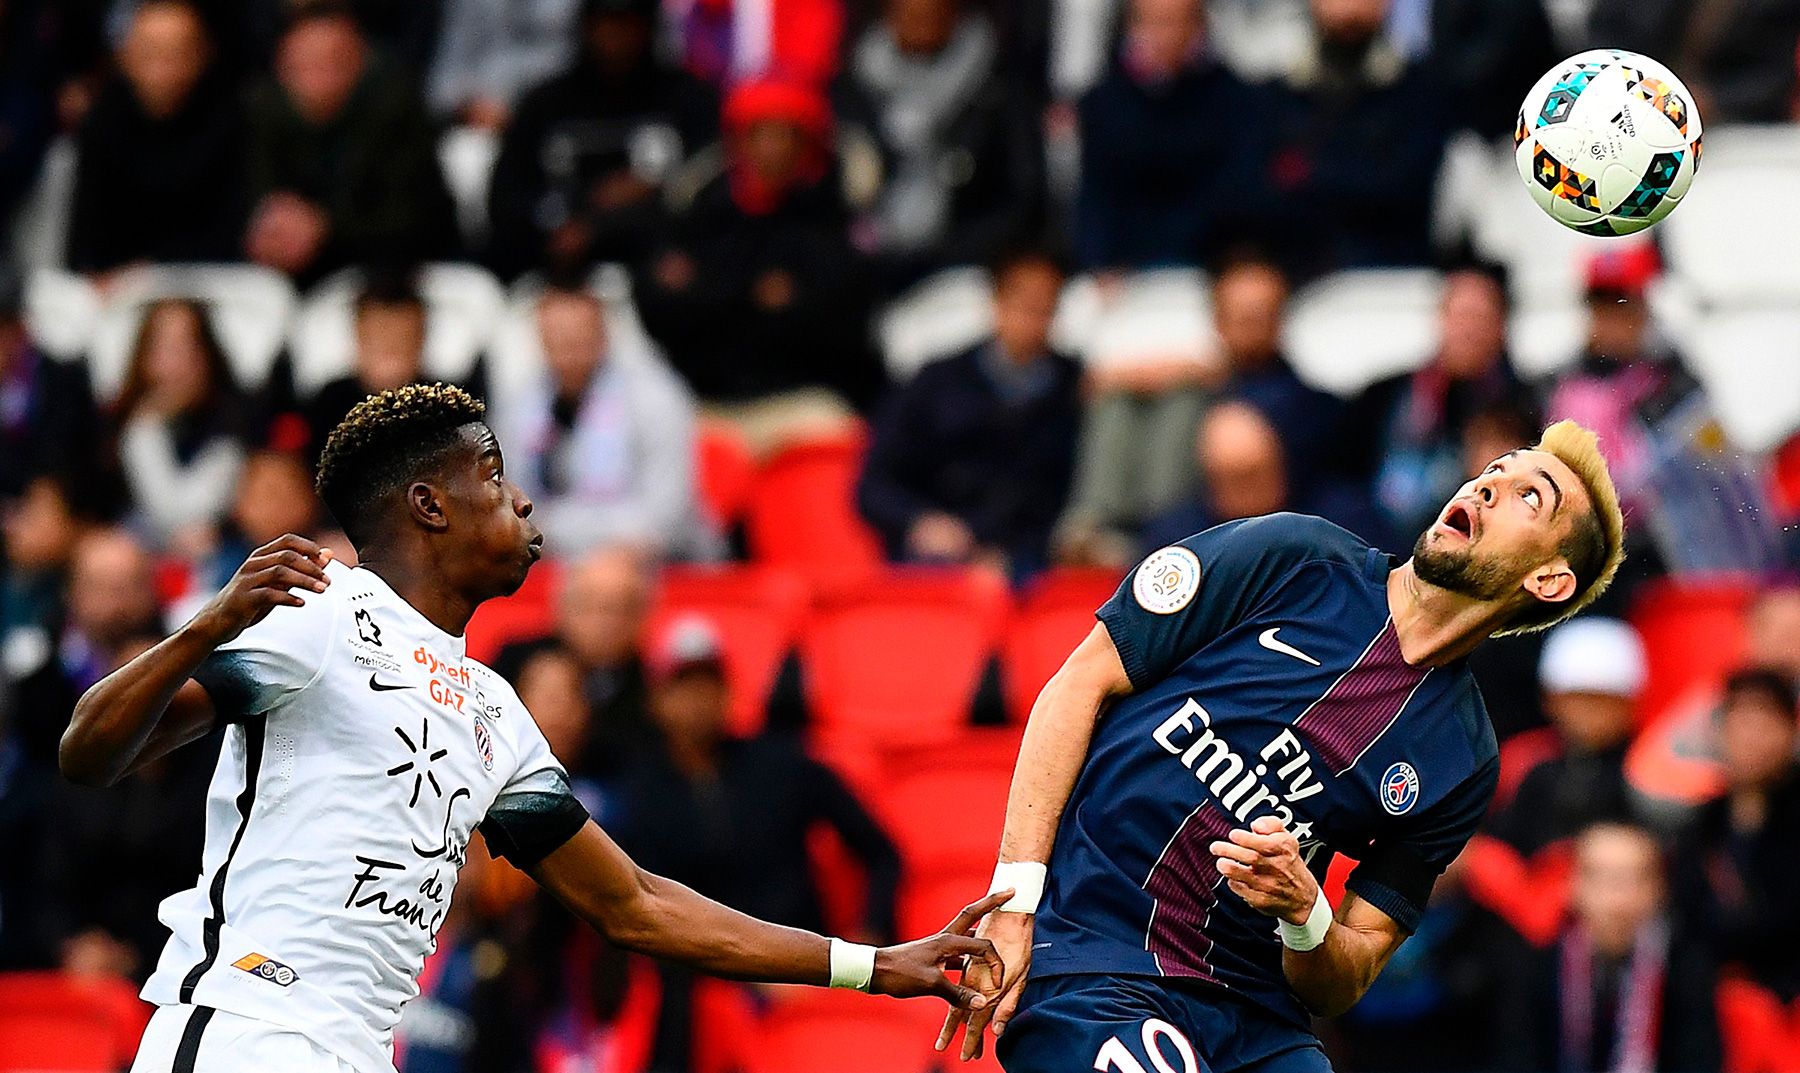 PSG-Montpellier preview: Les Parisiens eye top spot